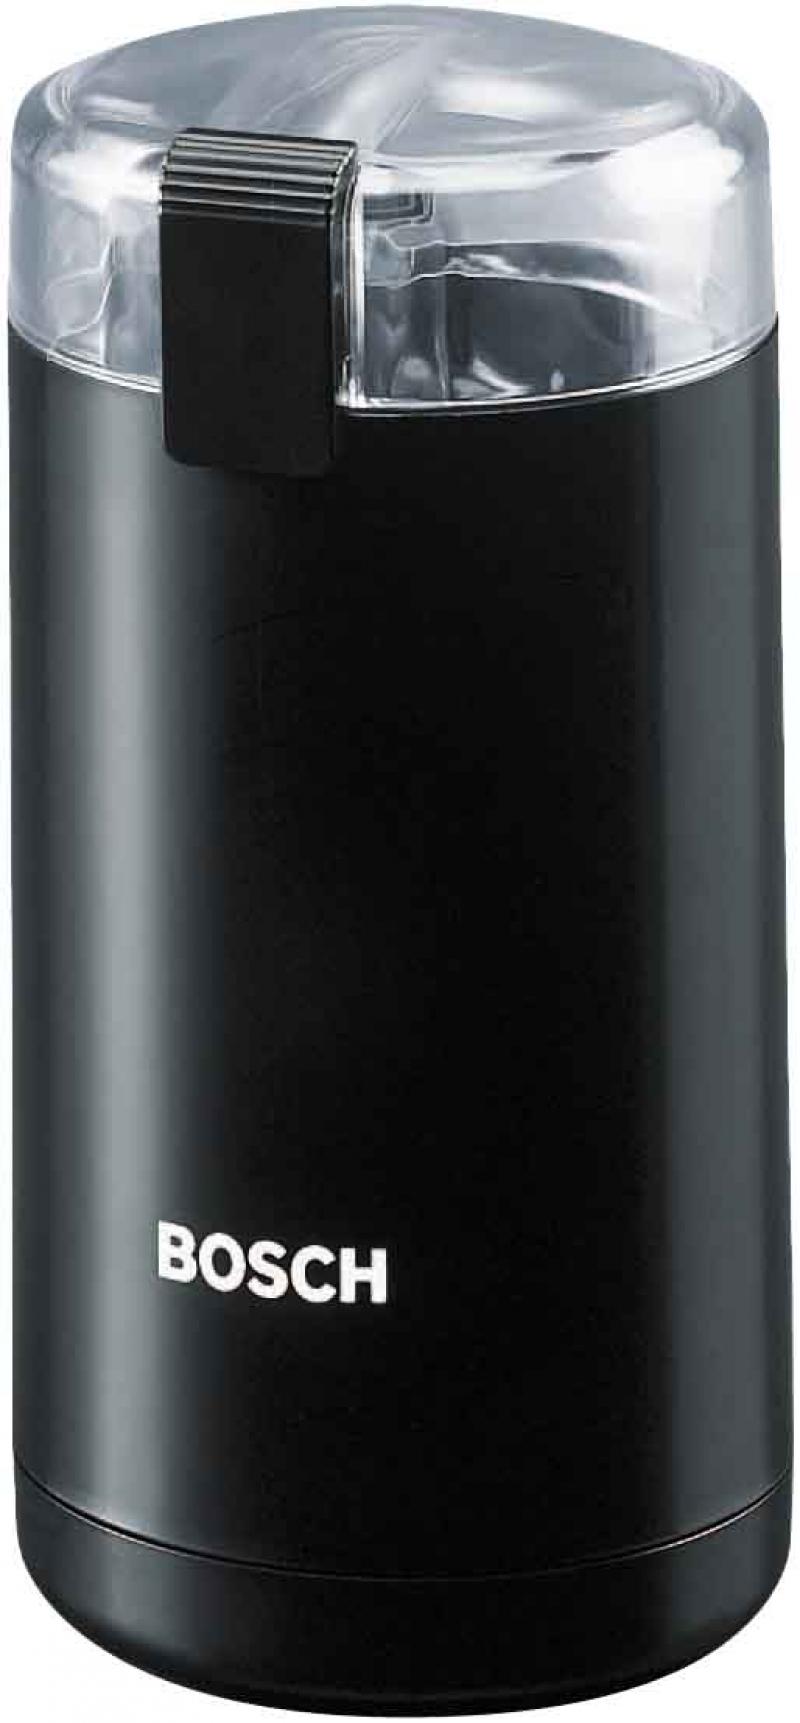 Bosch mkm 6000 6003